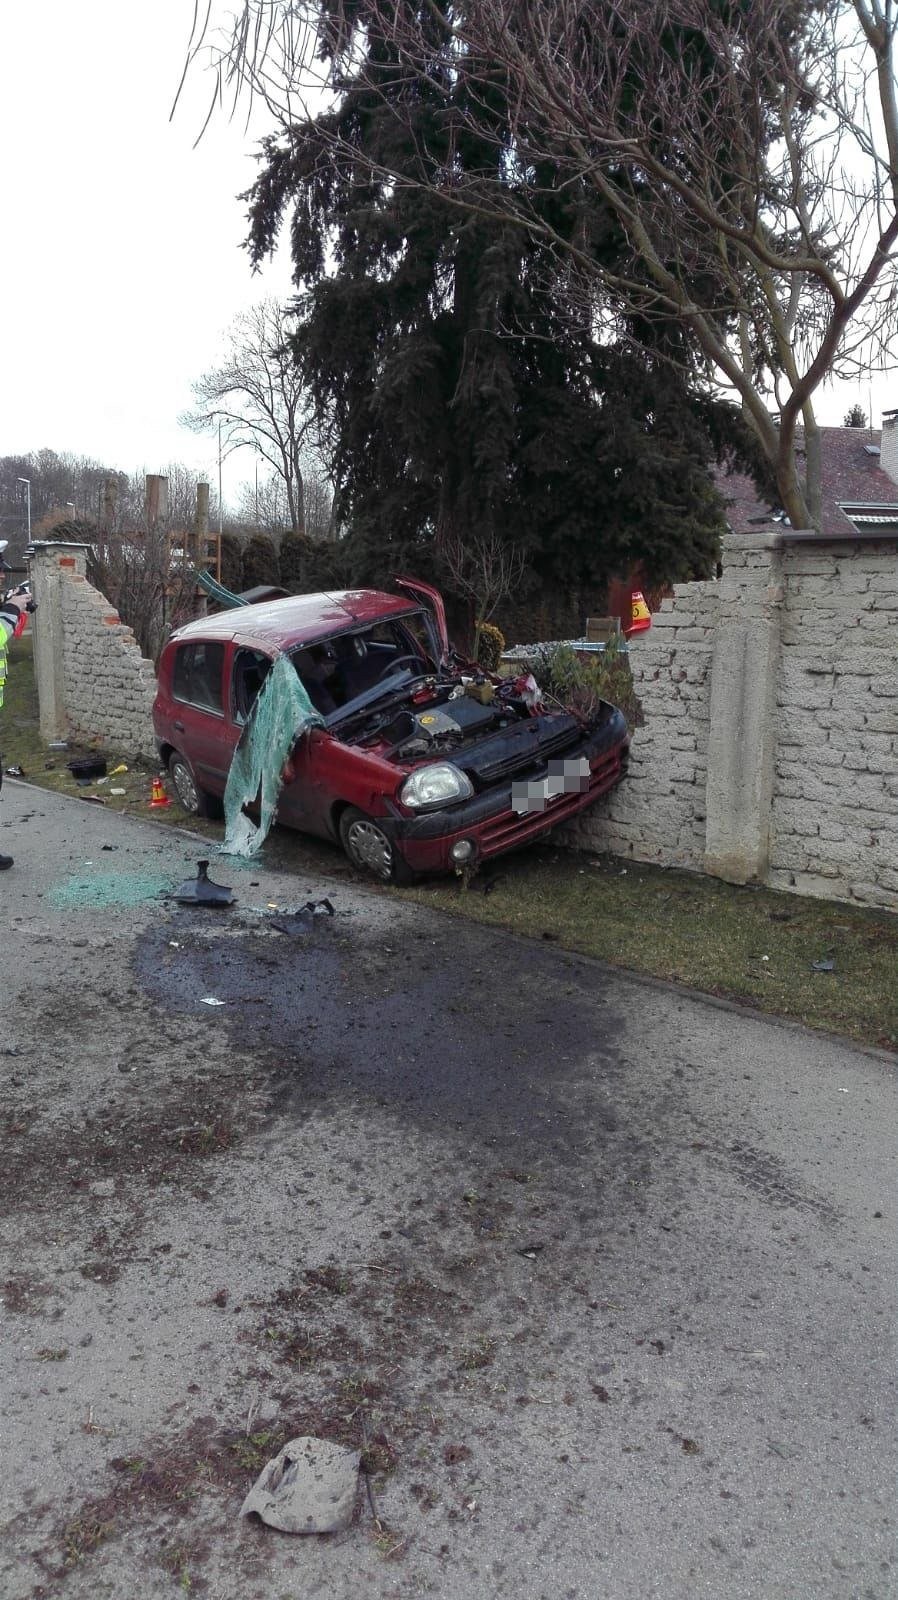 Děsivá nehoda na Olomoucku: Rychlík smetl auto s dětmi!